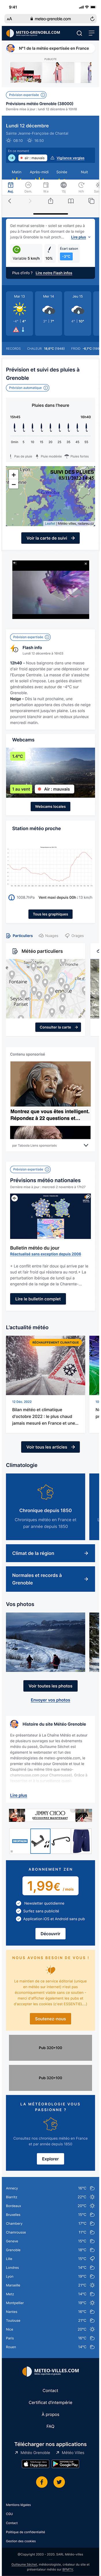 Version mobile du site Météo Villes réalisé par l'agence web ISICS